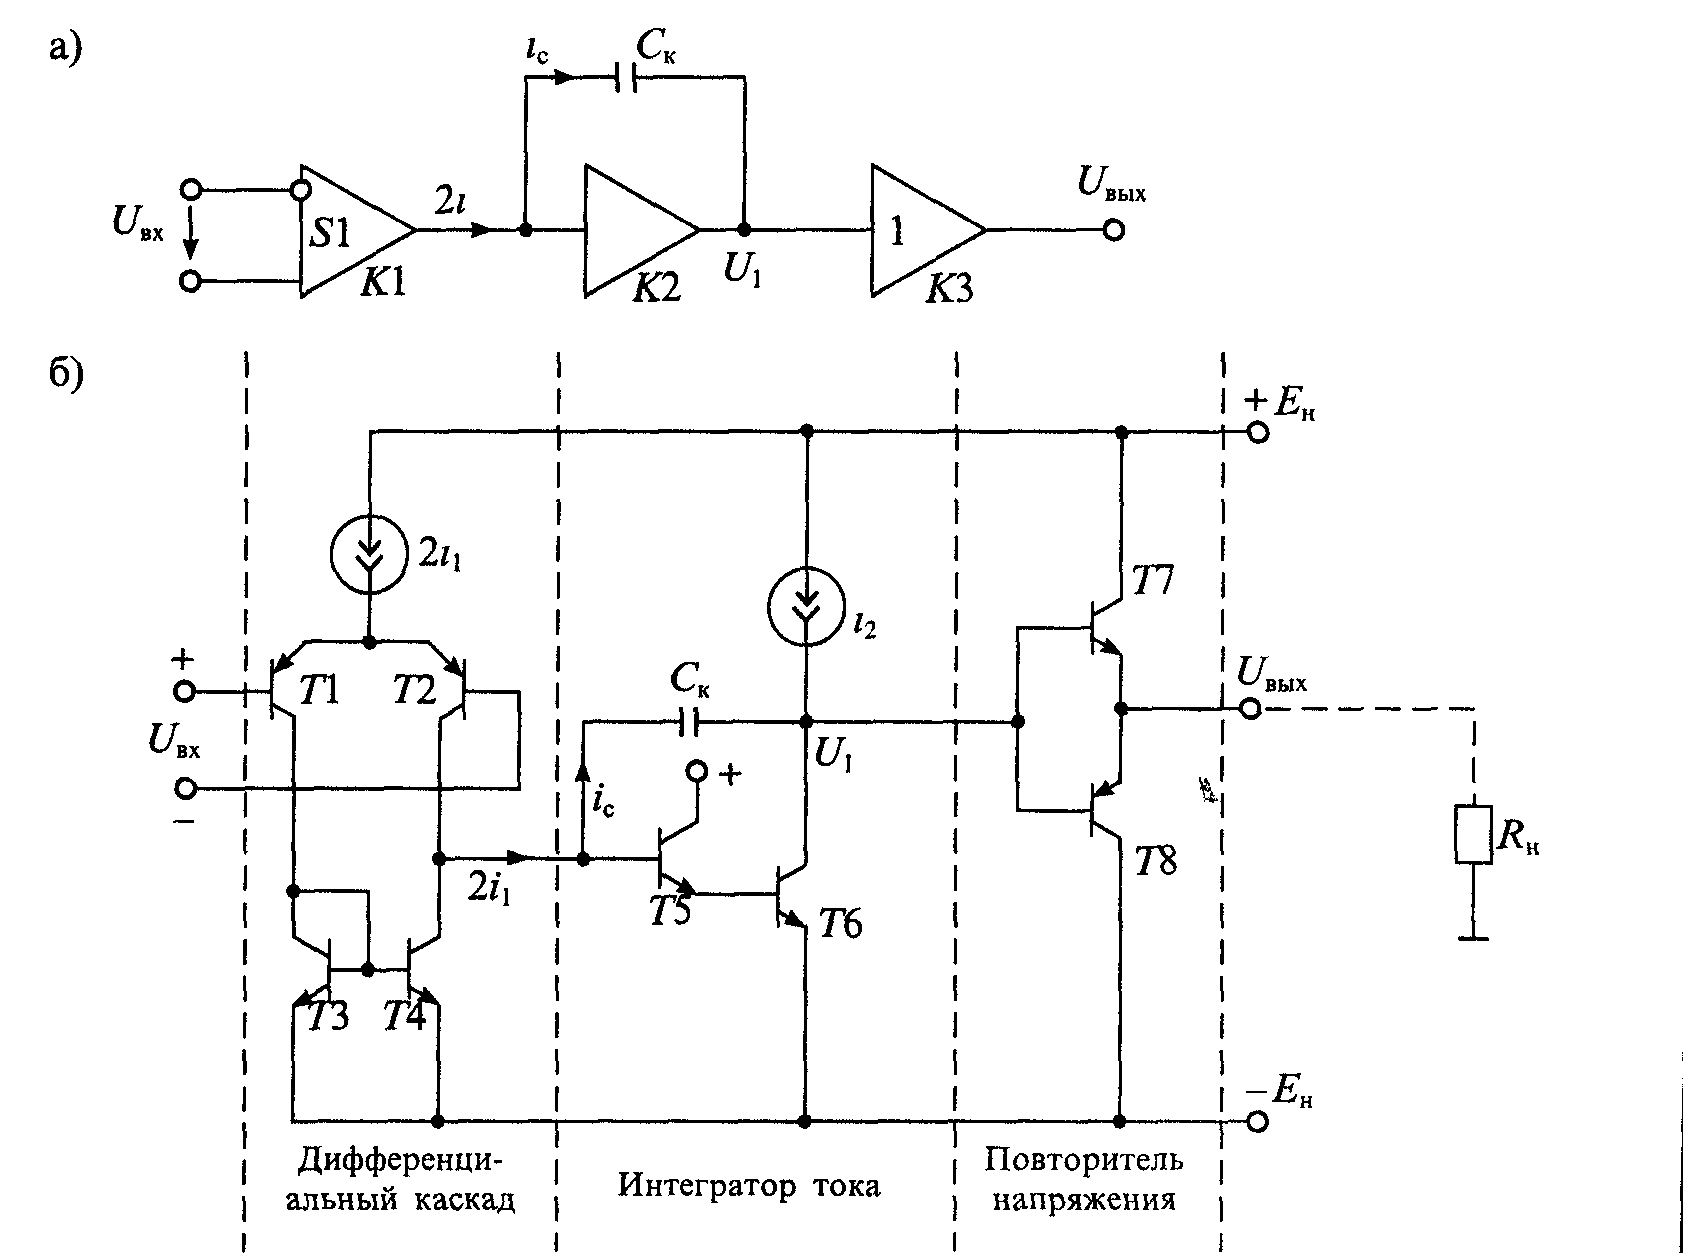 Что такое интегратор. Схема усилитель напряжения дифференциальный Каскад на операционном. Интегратор на операционном усилителе. Схема операционного усилителя на транзисторах. Схема дифференциального каскада на операционном усилителе.